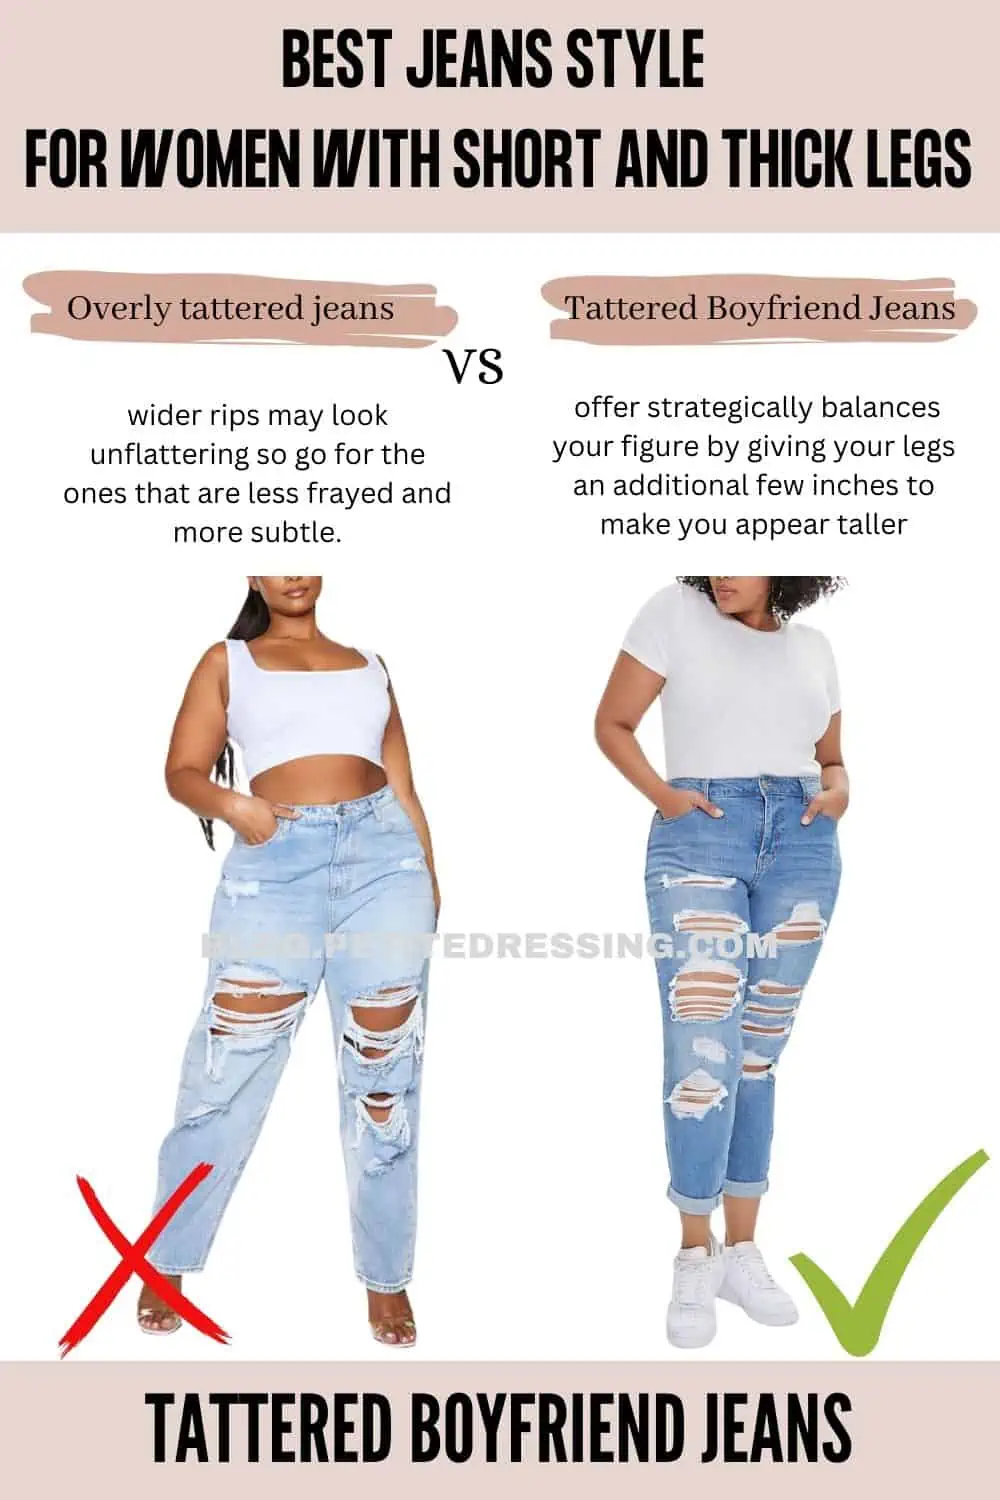 Styling Women's Jeans for Longer Legs